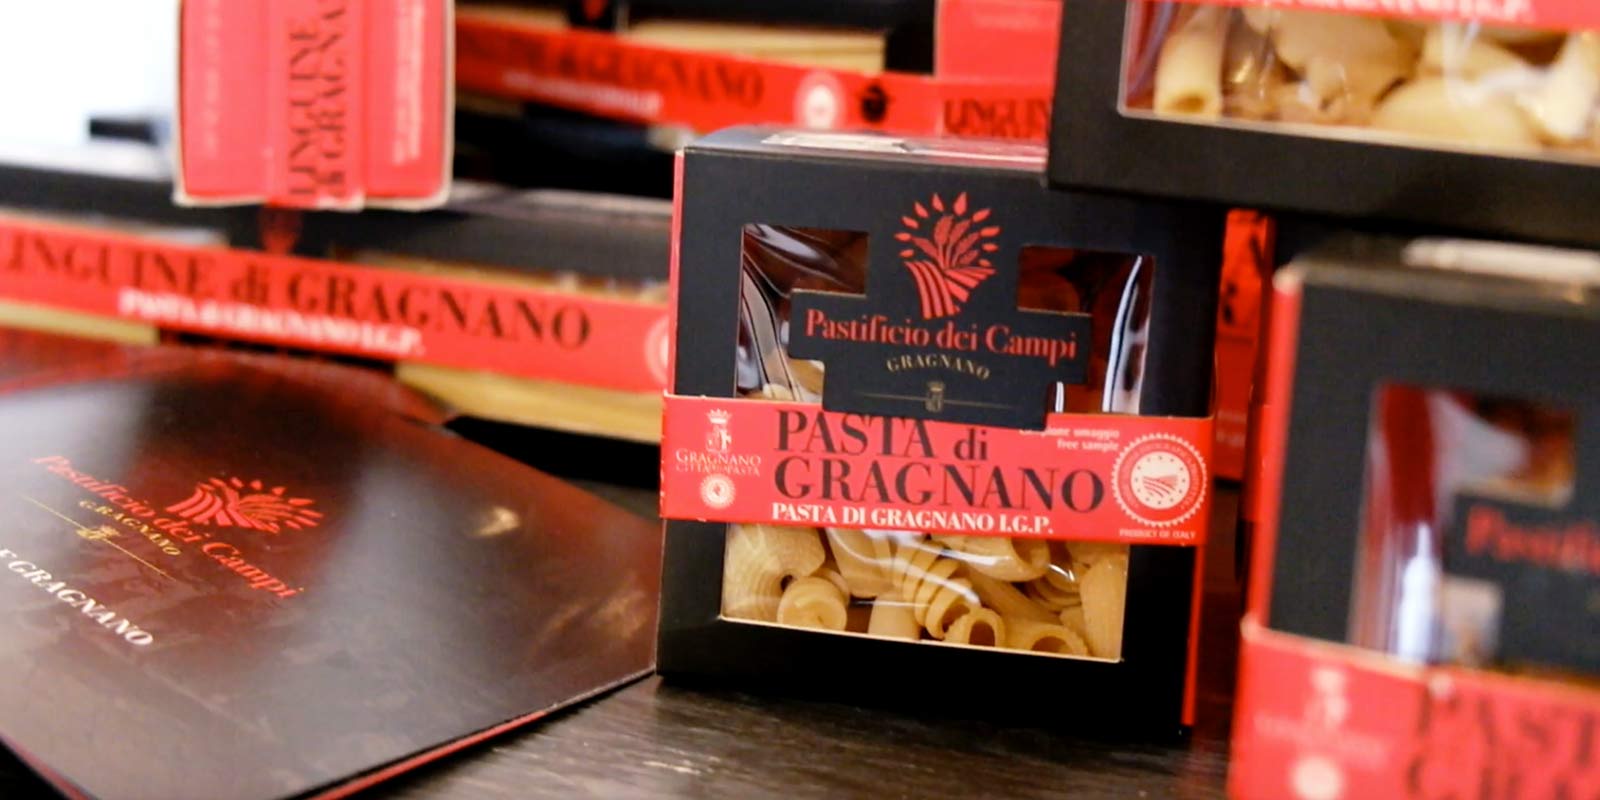 Pastifico dei Campi - Pasta di Gragnano IGP Pastificio dei Campi produkuje wloskie klasyki i oryginalne dziela. Makaron wytwarzany jest w 100% z wloskiej semoliny z pszenicy durum i wytlaczany w formach z brazu.